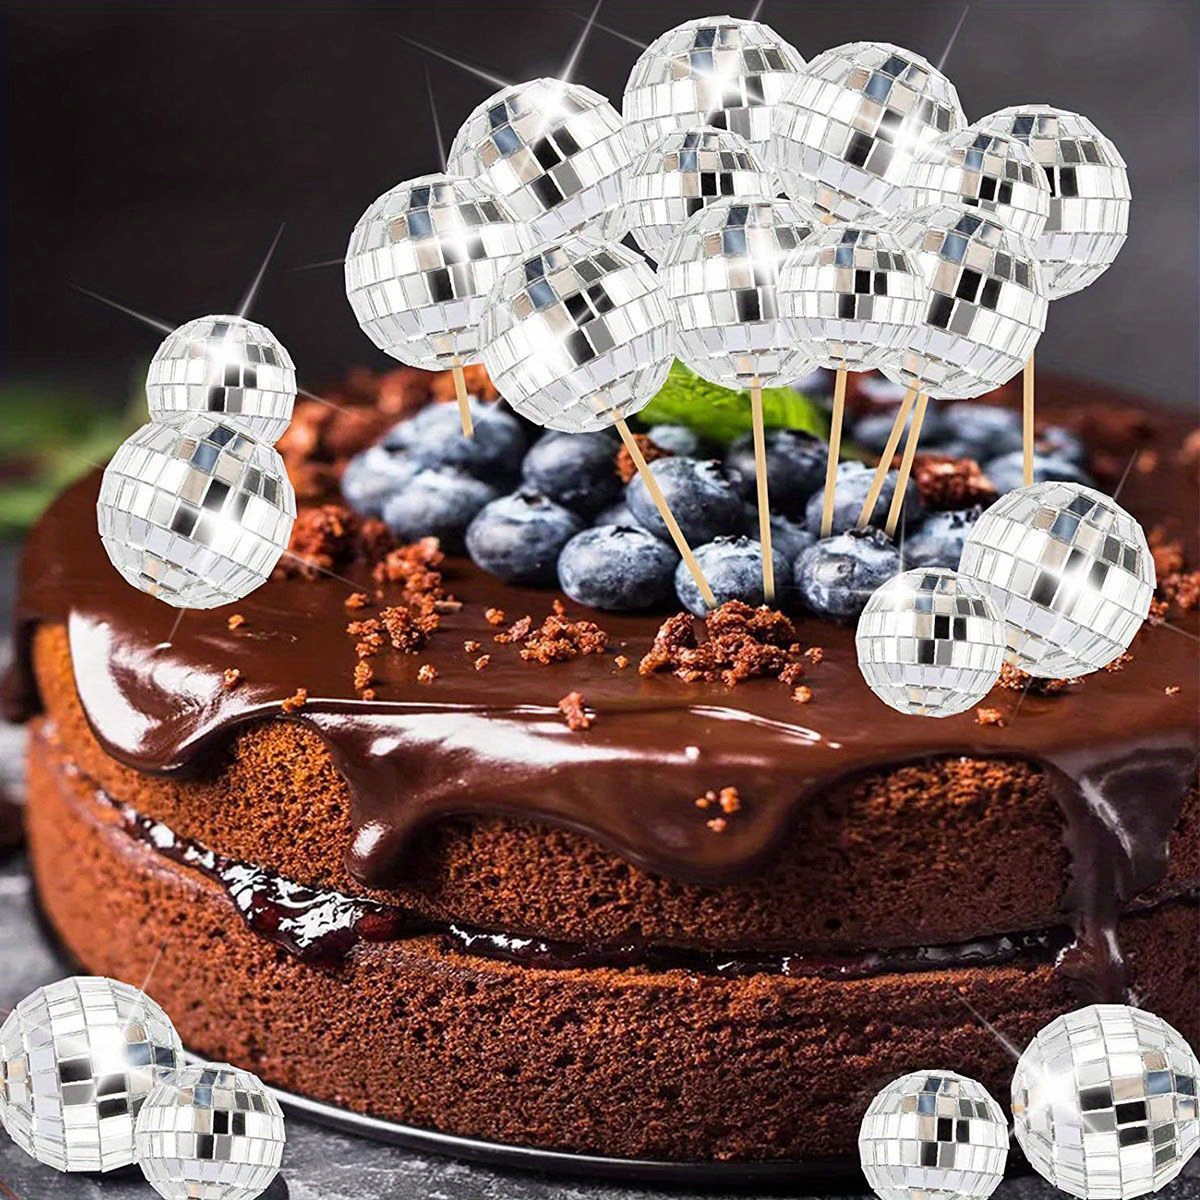 

10pcs, Mirror Ball Cake Decor, Cake Toppers, Cupcake Toppers, Birthday/wedding Party Cupcake Decor, Baking Decor Supplies, Party Supplies Favors, Birthday/wedding Diy Decor